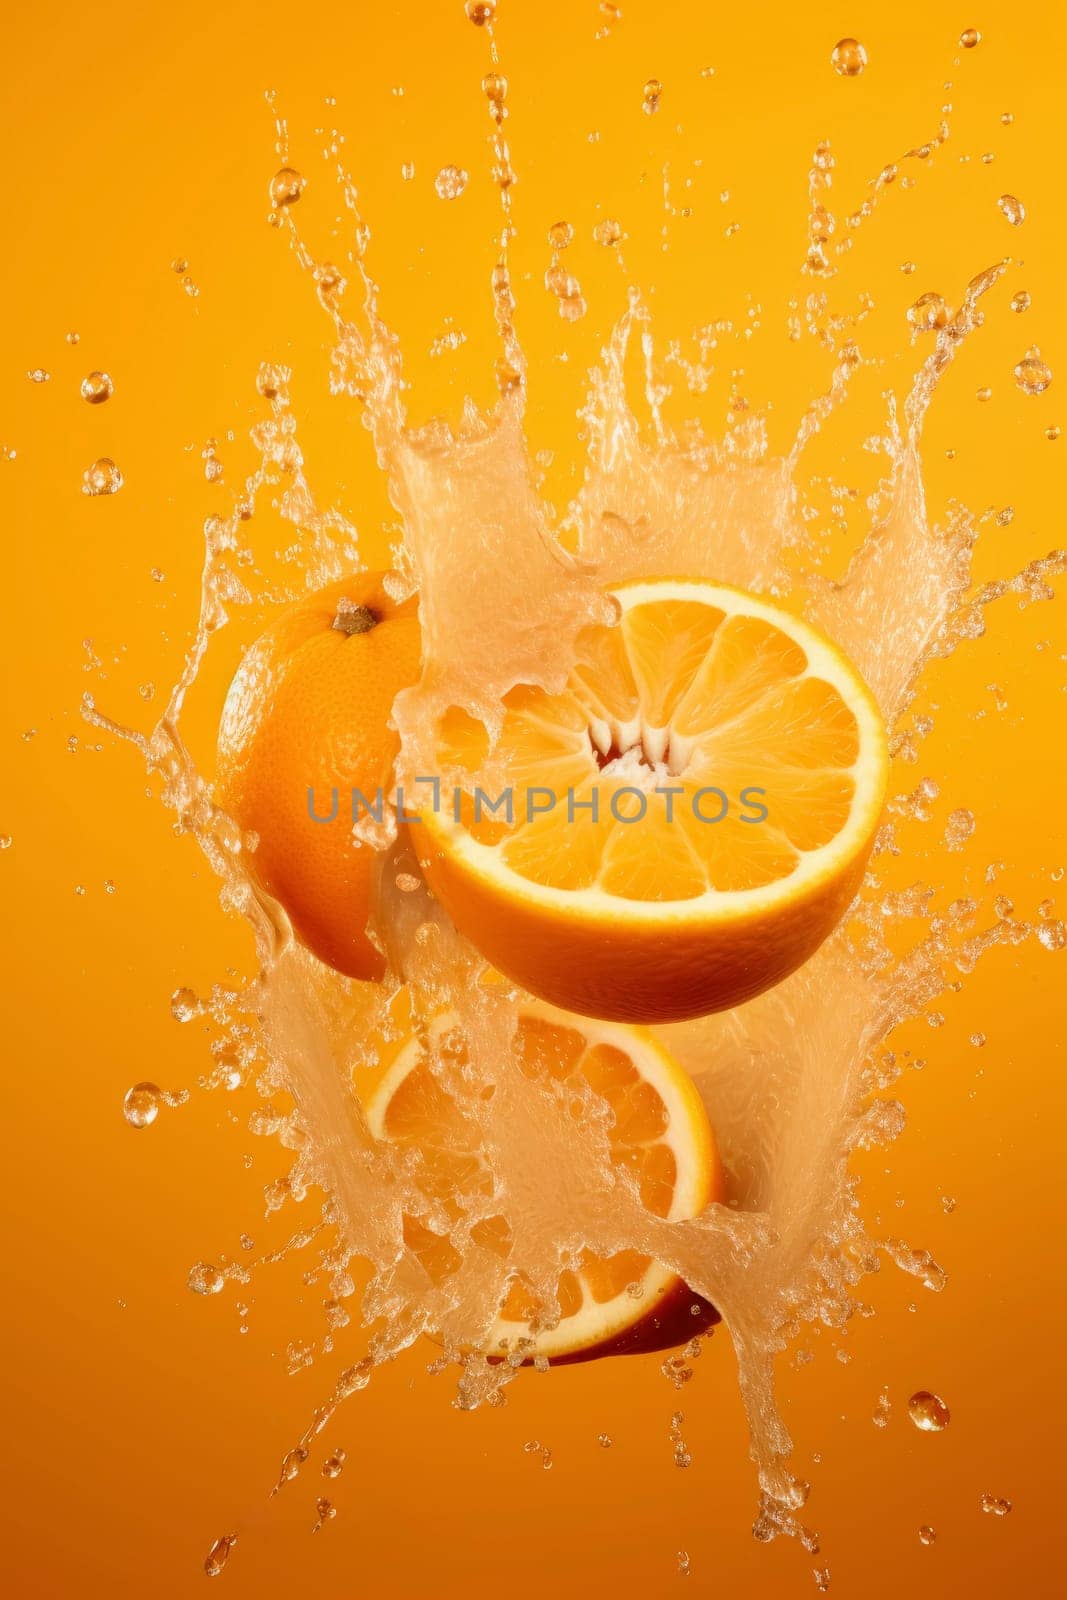 Fresh Orange Halves in Splash on Orange Background by andreyz